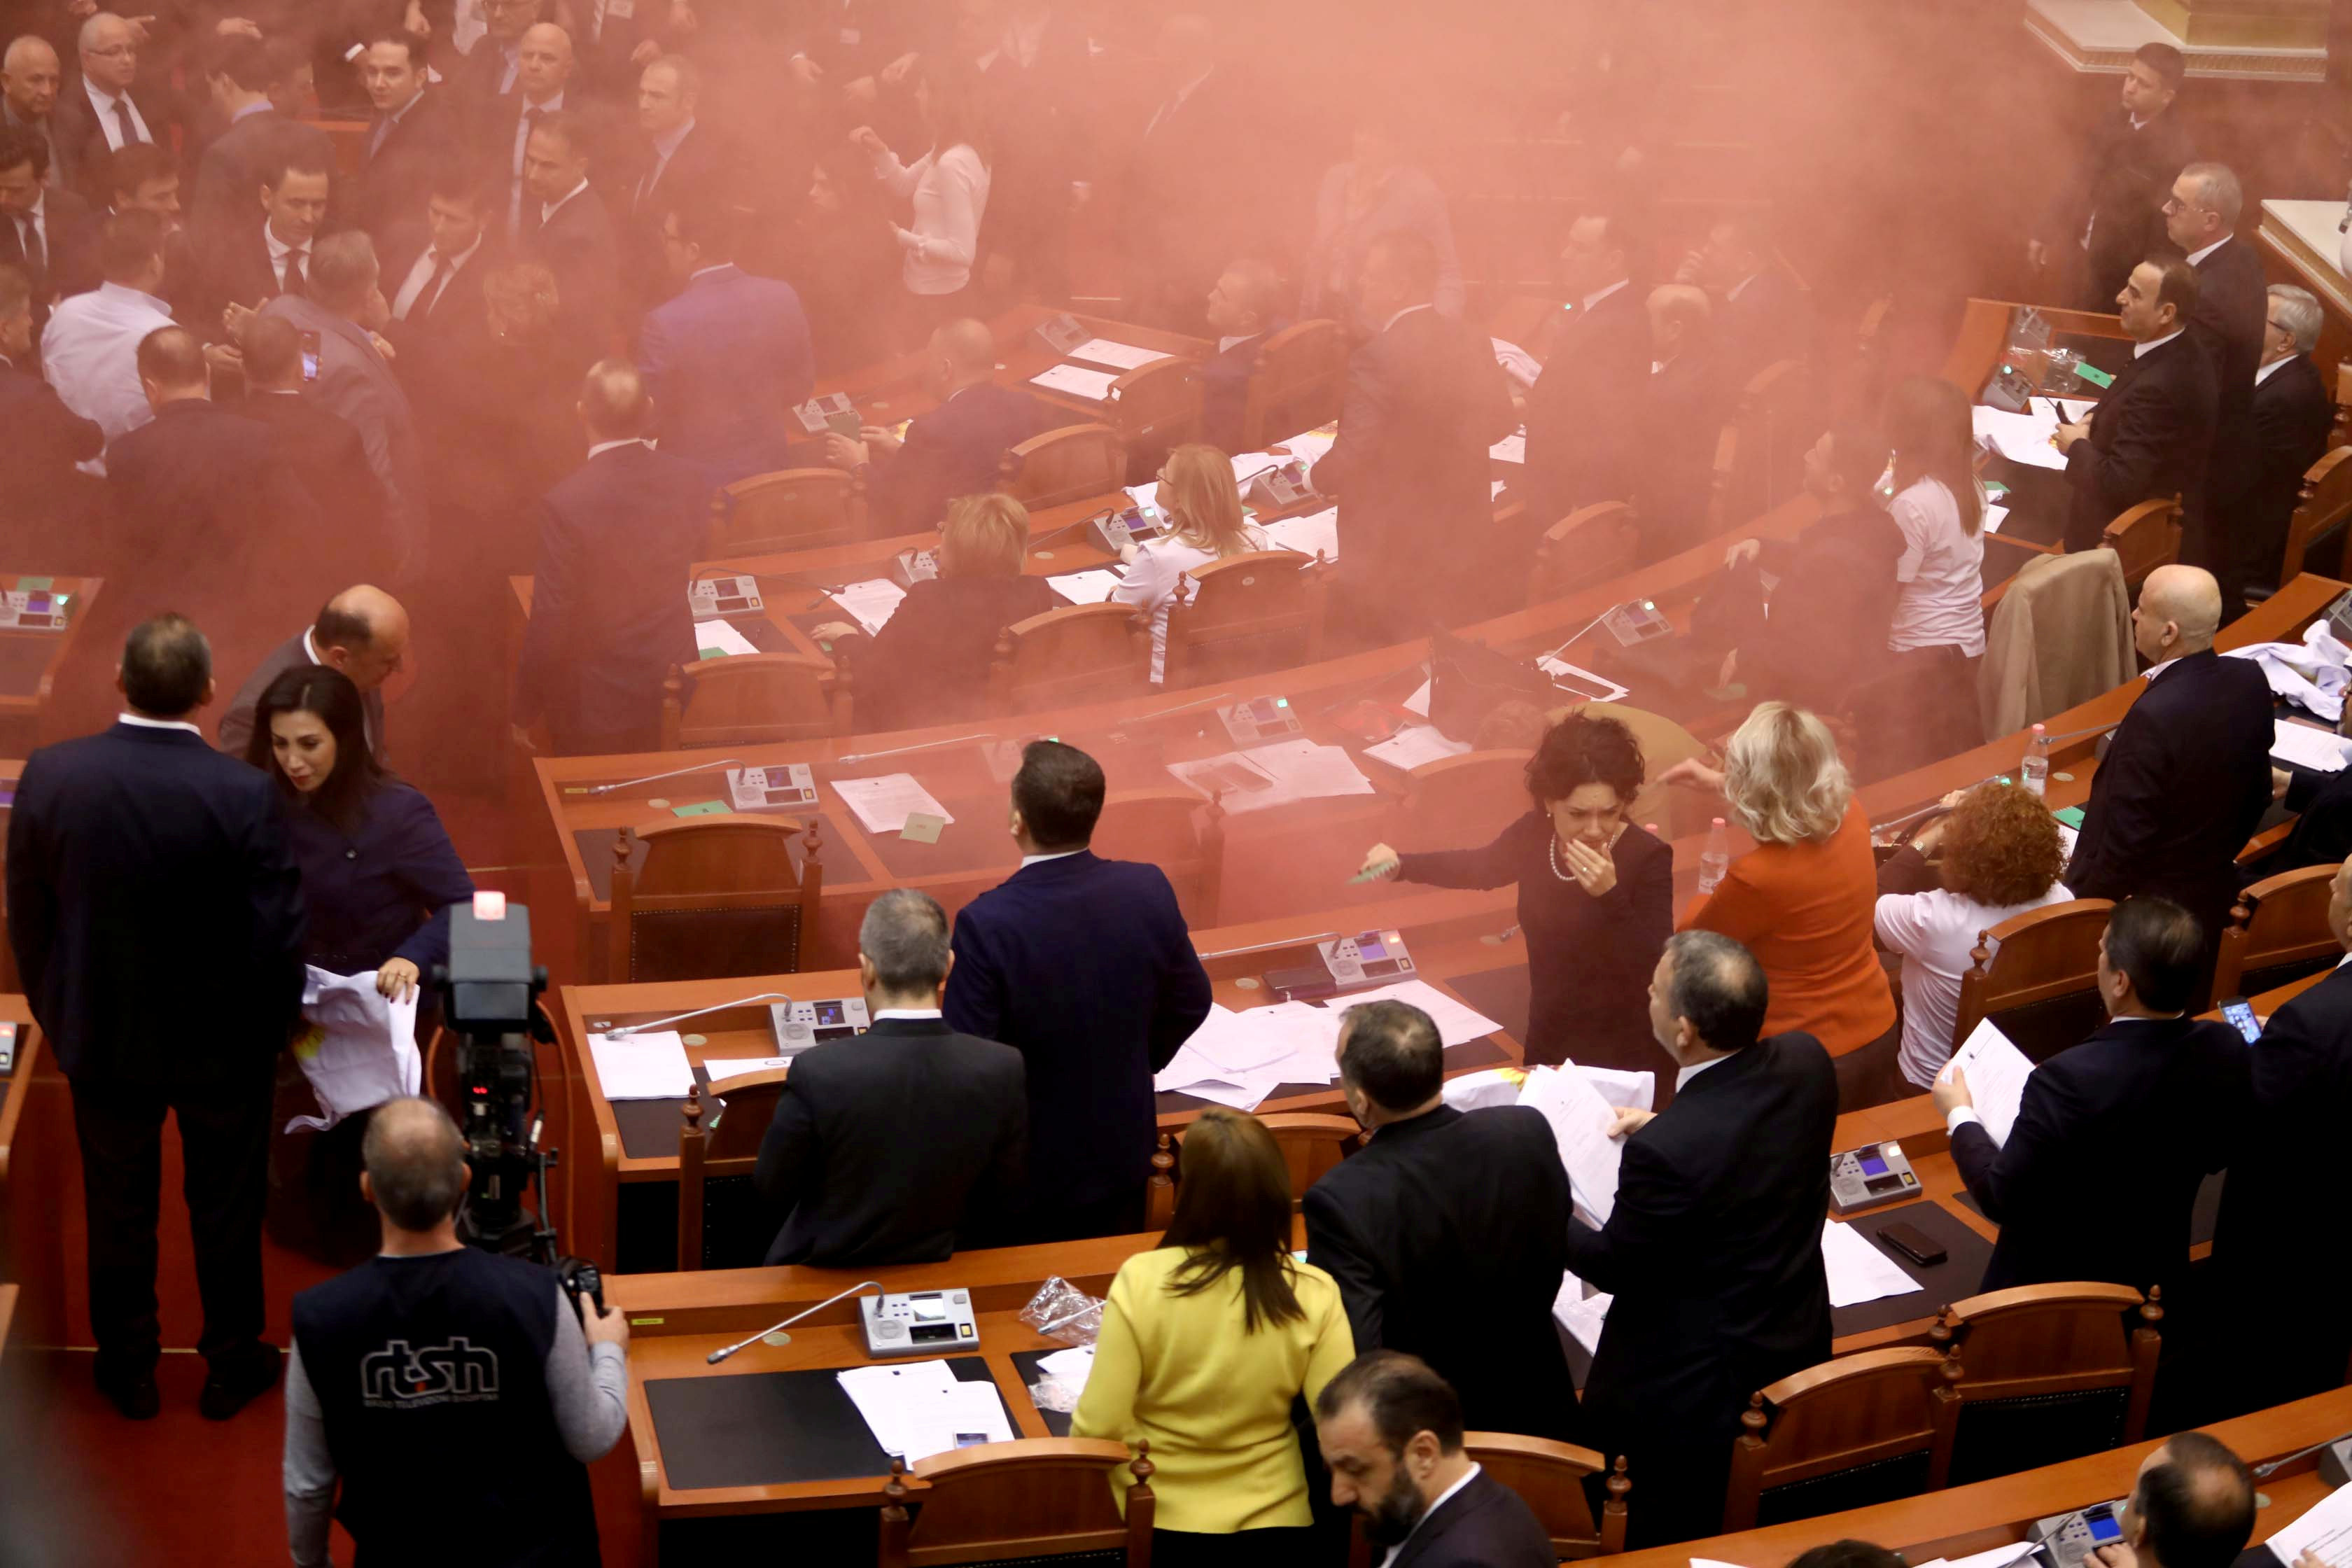 Arnavutluk meclisine sis bombası atıldı